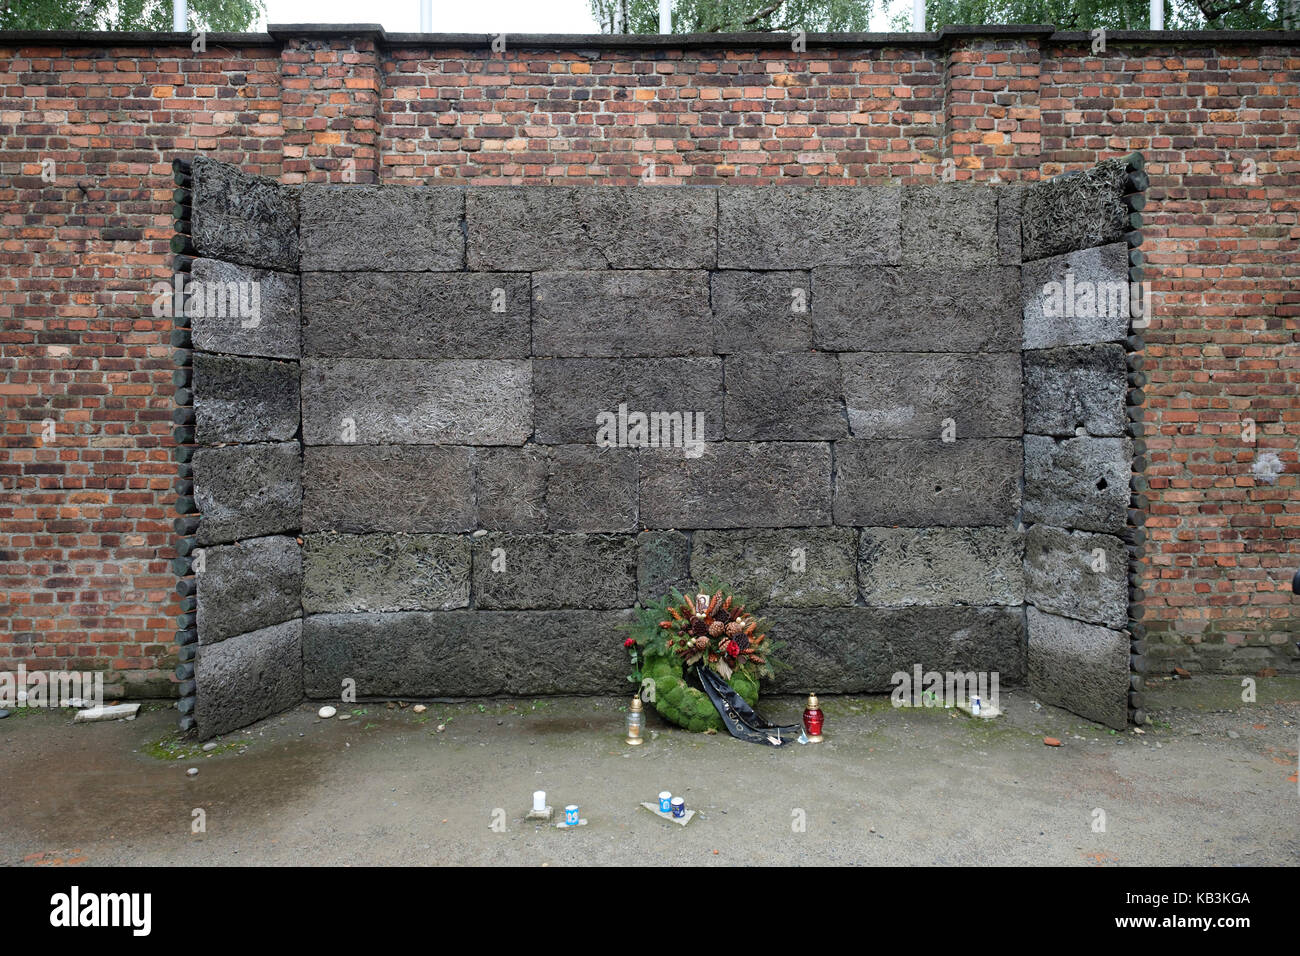 Wall utilisé pour un peloton d'exécutions à l'Auschwitz camp de concentration Nazi, Pologne Banque D'Images